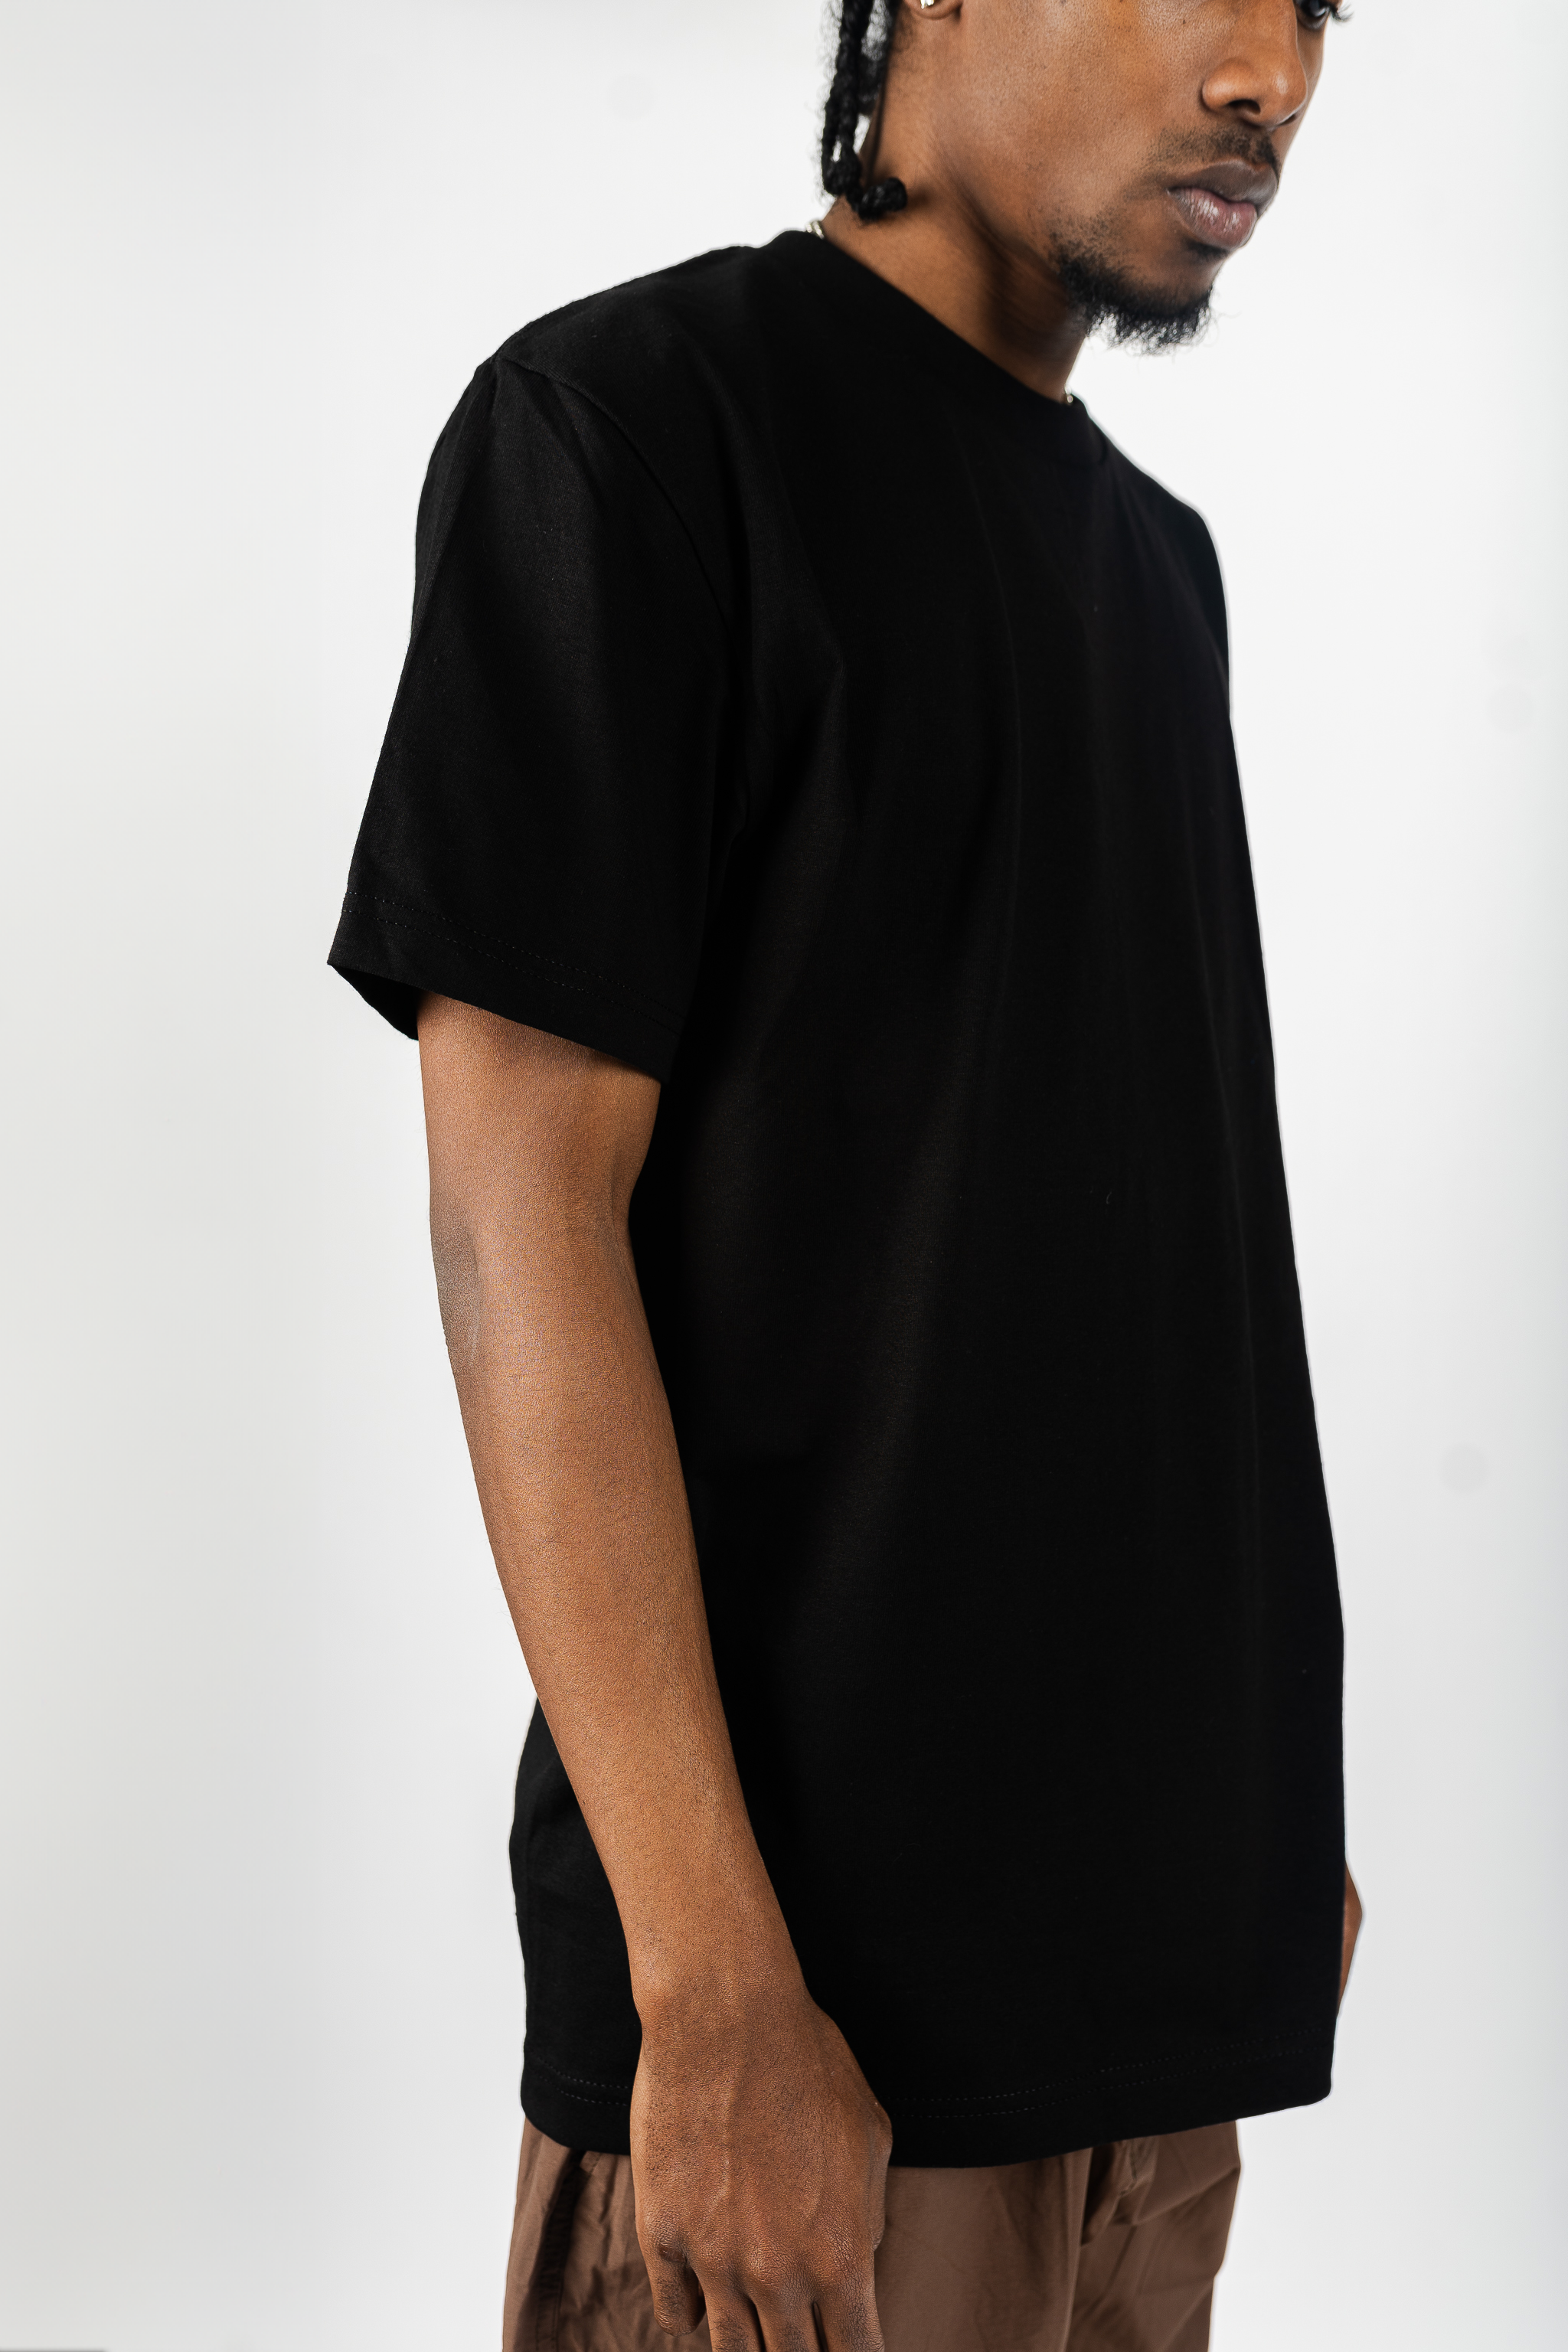 Sunline SUW-15203DT T-Shirt Dri Fit Short Sleeve Black Chinu XXL